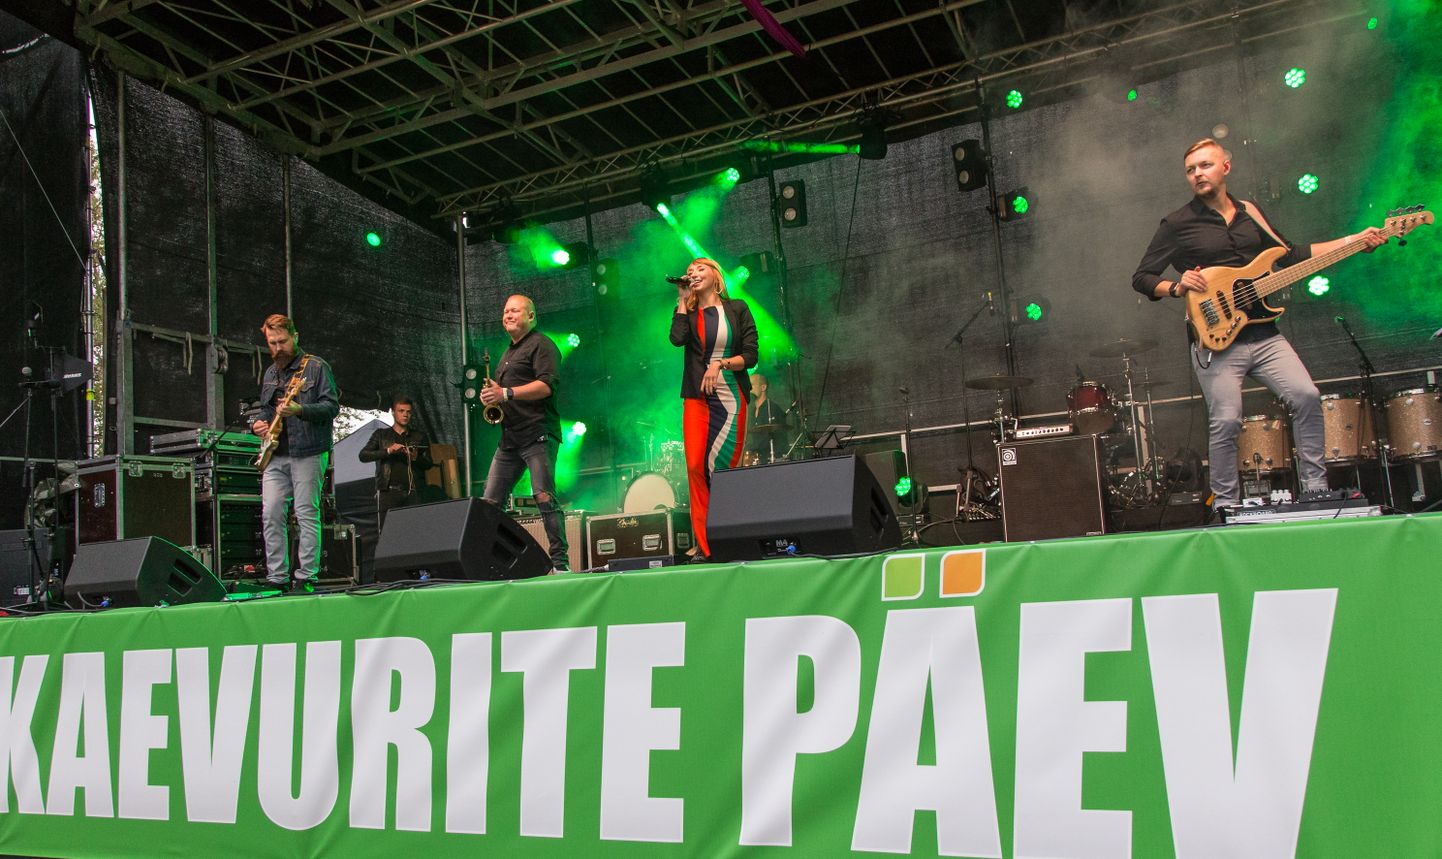 Kohtla-Järvelt pärit üks Eesti hinnatumaid poplauljatare Tanja esines kaevurite päeval 2018. aastal ja neli aastat hiljem, mil see rahvapidu on saanud nimeks "Viru fest", tuleb ta taas lavale.